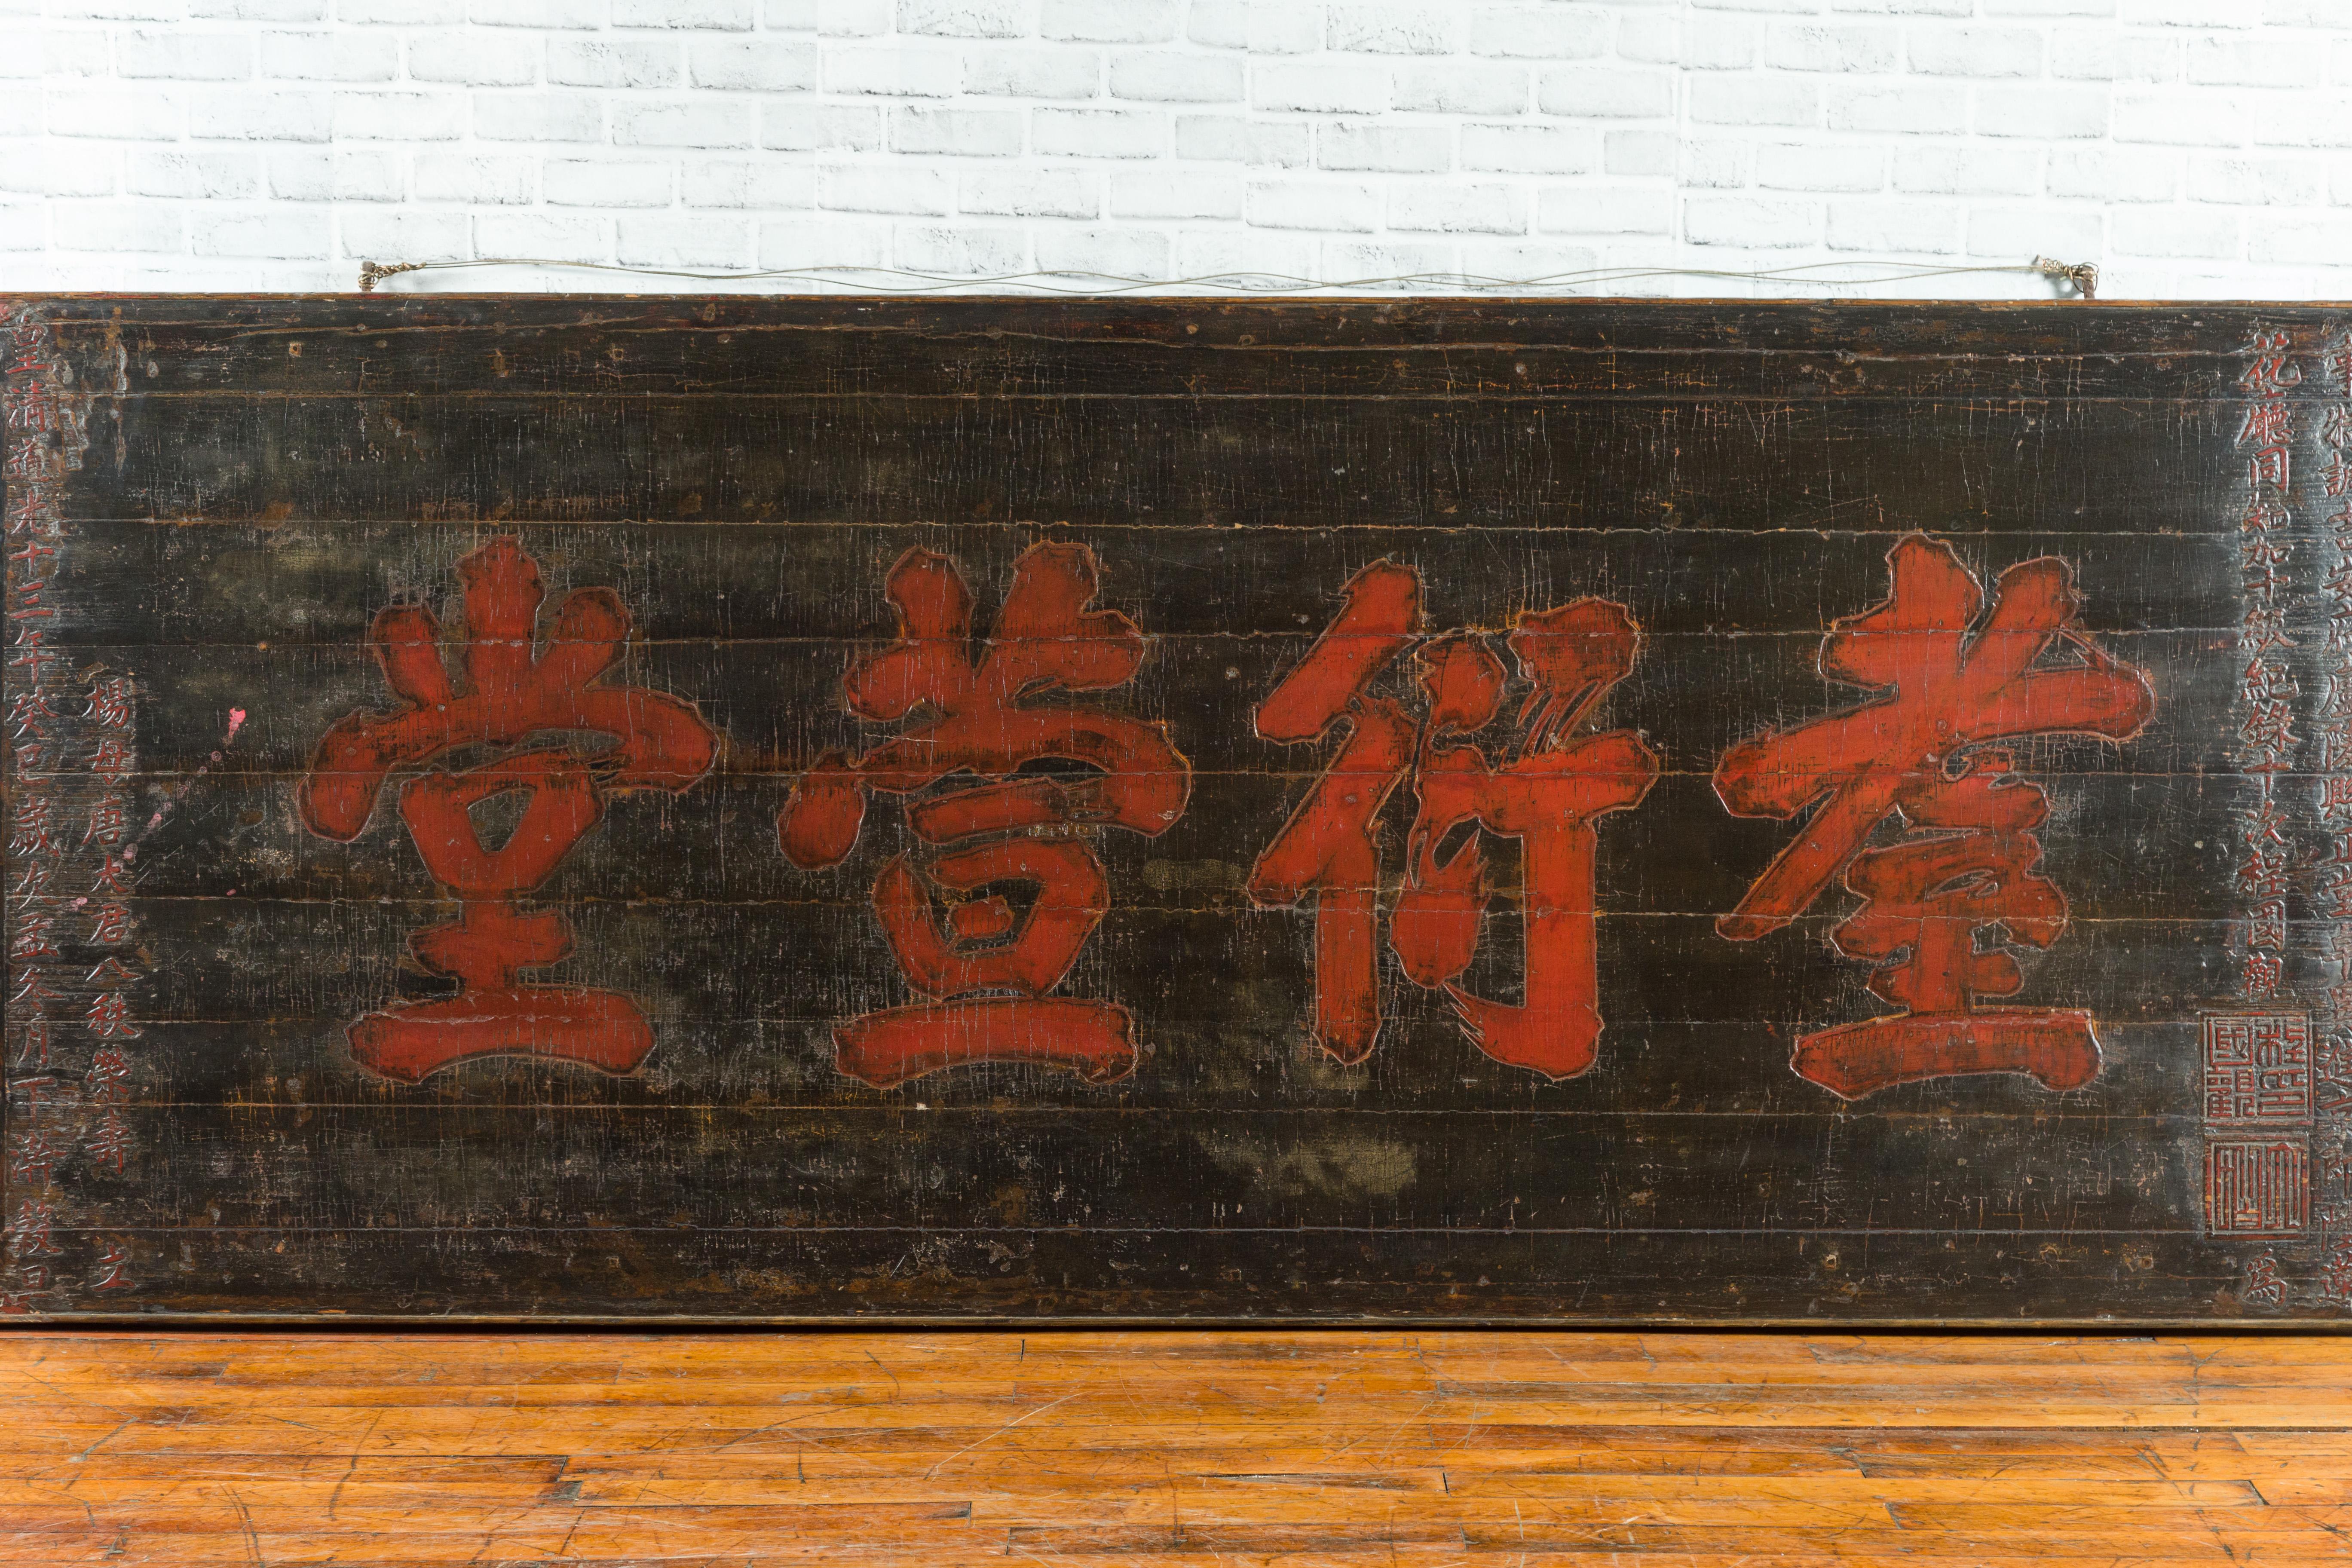 Ein großes schwarzes Schild aus der chinesischen Qing-Dynastie aus dem 19. Jahrhundert mit roter Kalligrafie. Dieses große horizontale Schild aus der Qing-Dynastie stammt aus einem chinesischen Tempel und zeigt sowohl geschnitzte als auch gemalte